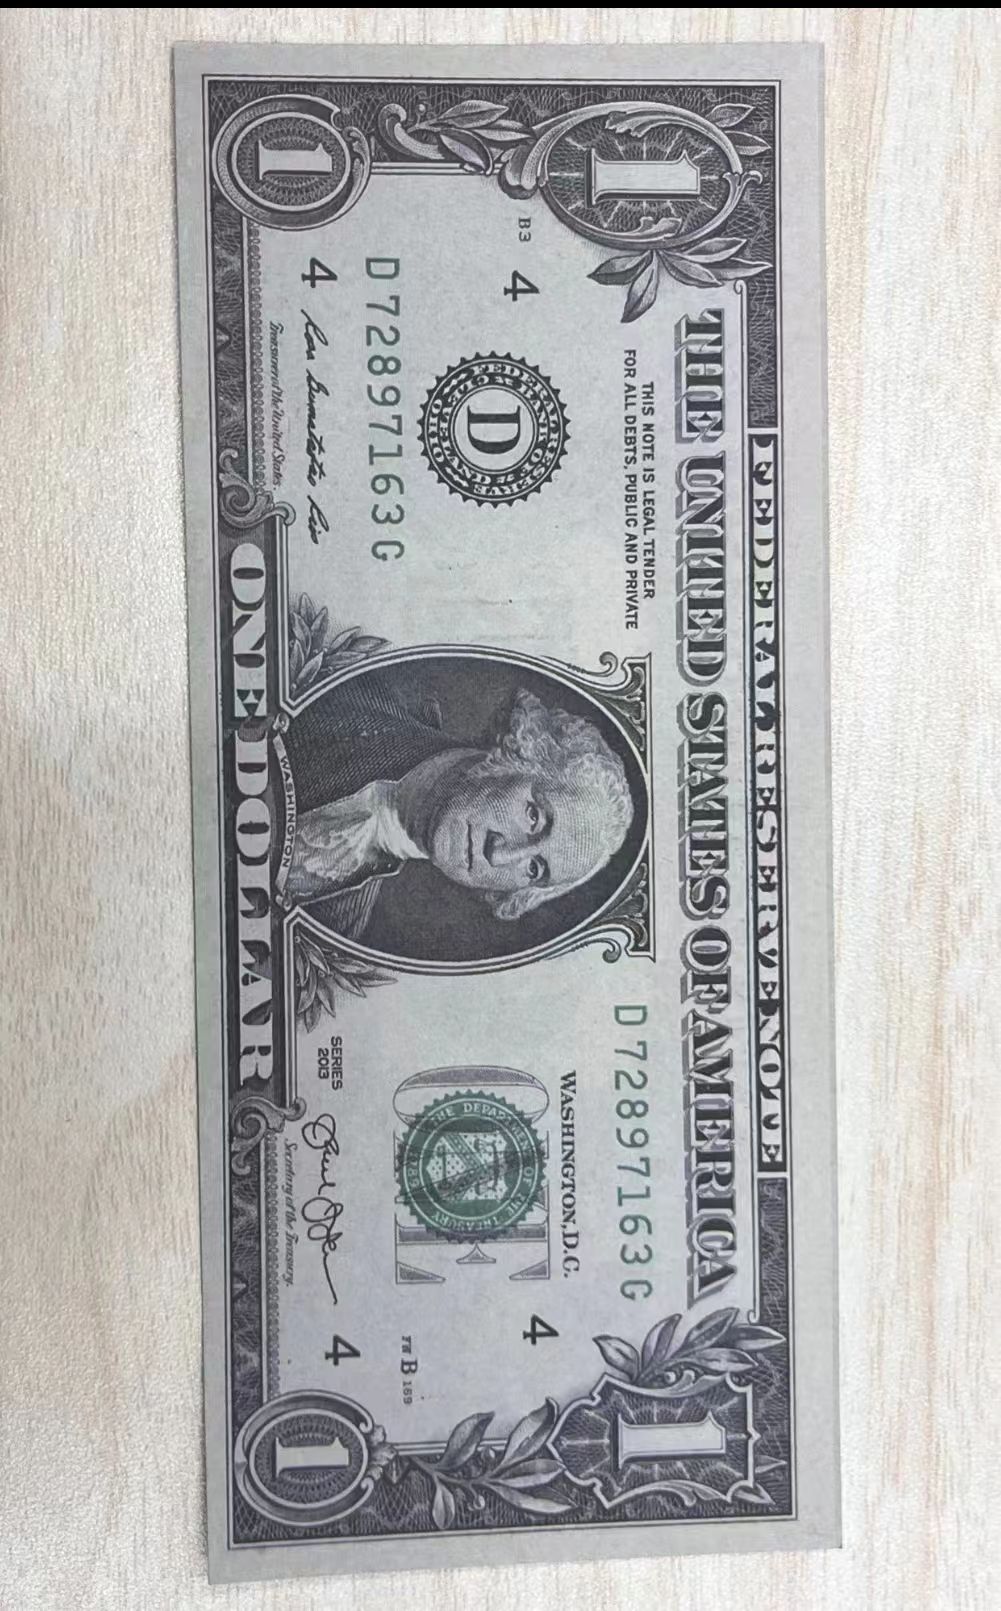 1 доллар